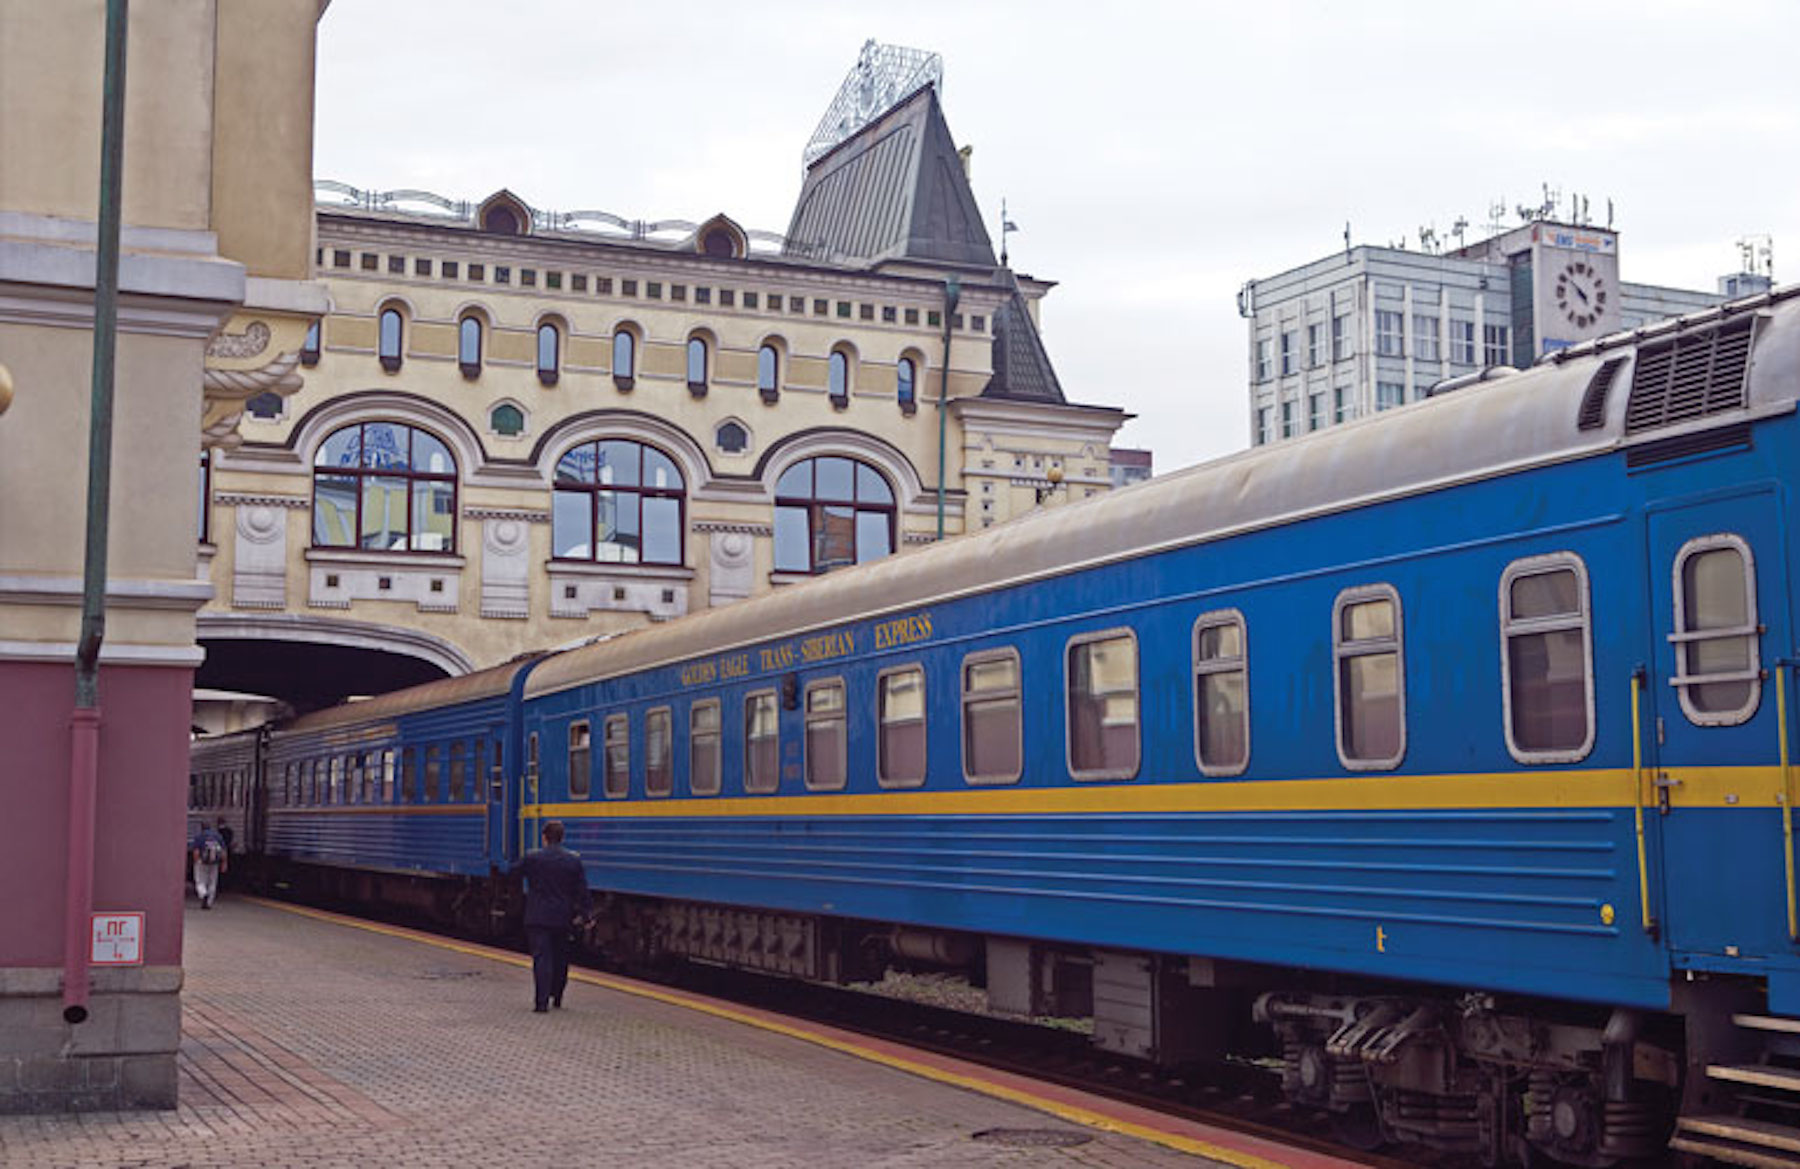 11 Most Luxurious Train Rides Cnn Travel